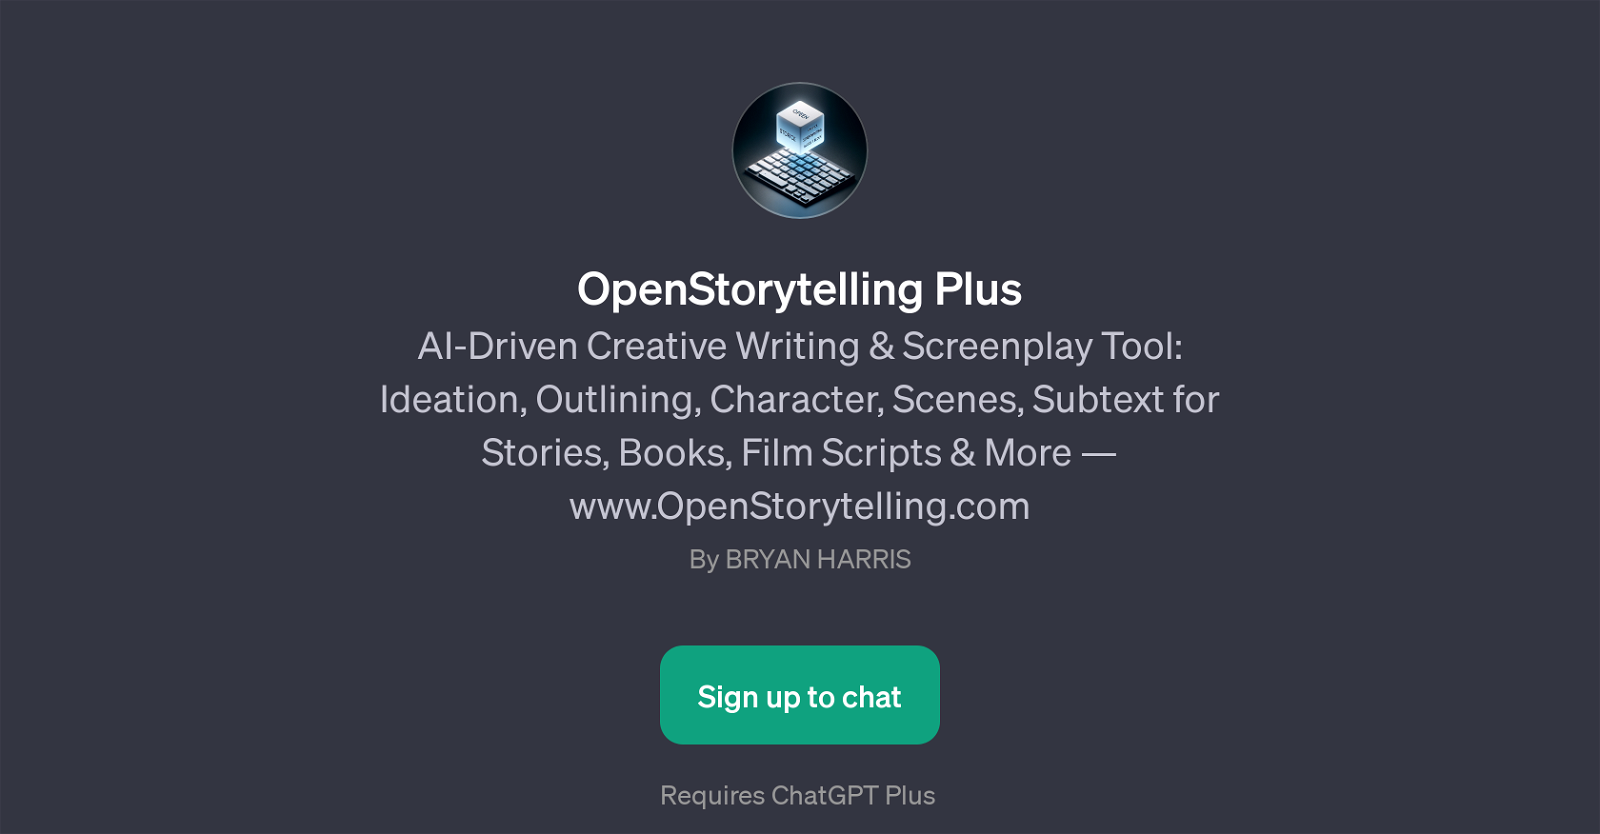 OpenStorytelling Plus website